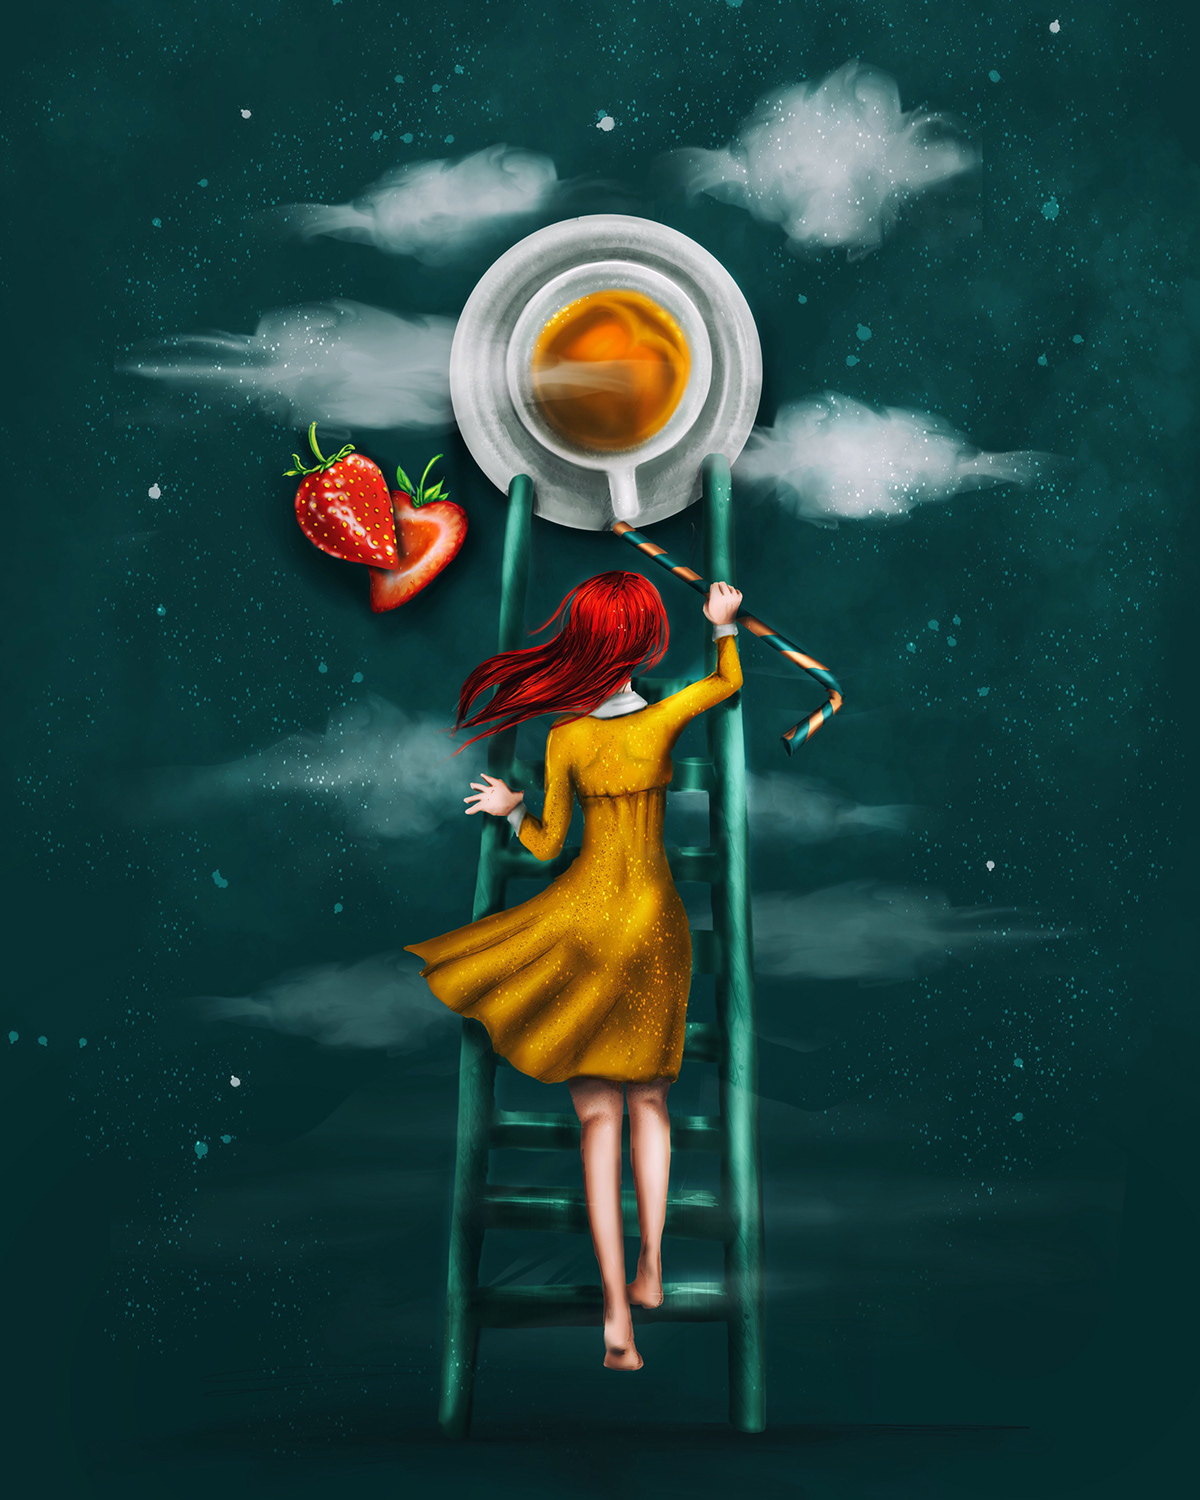 ILLUSTRATION  art digitalart Procreate ipad pro Character coverbook foodillustration Food  Coffee